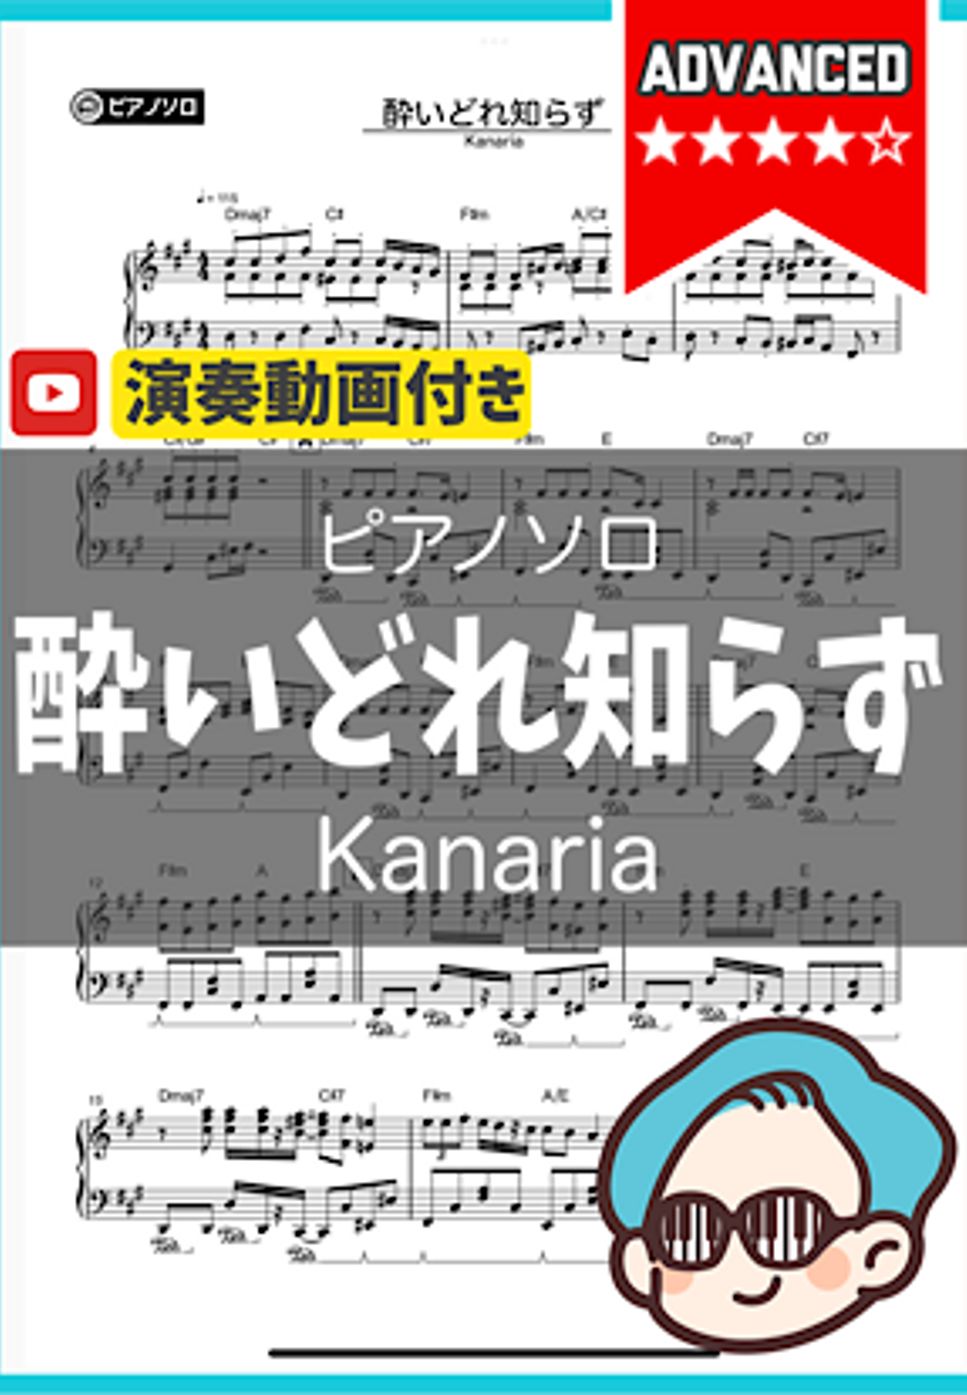 Kanaria - 酔いどれ知らず by シータピアノ